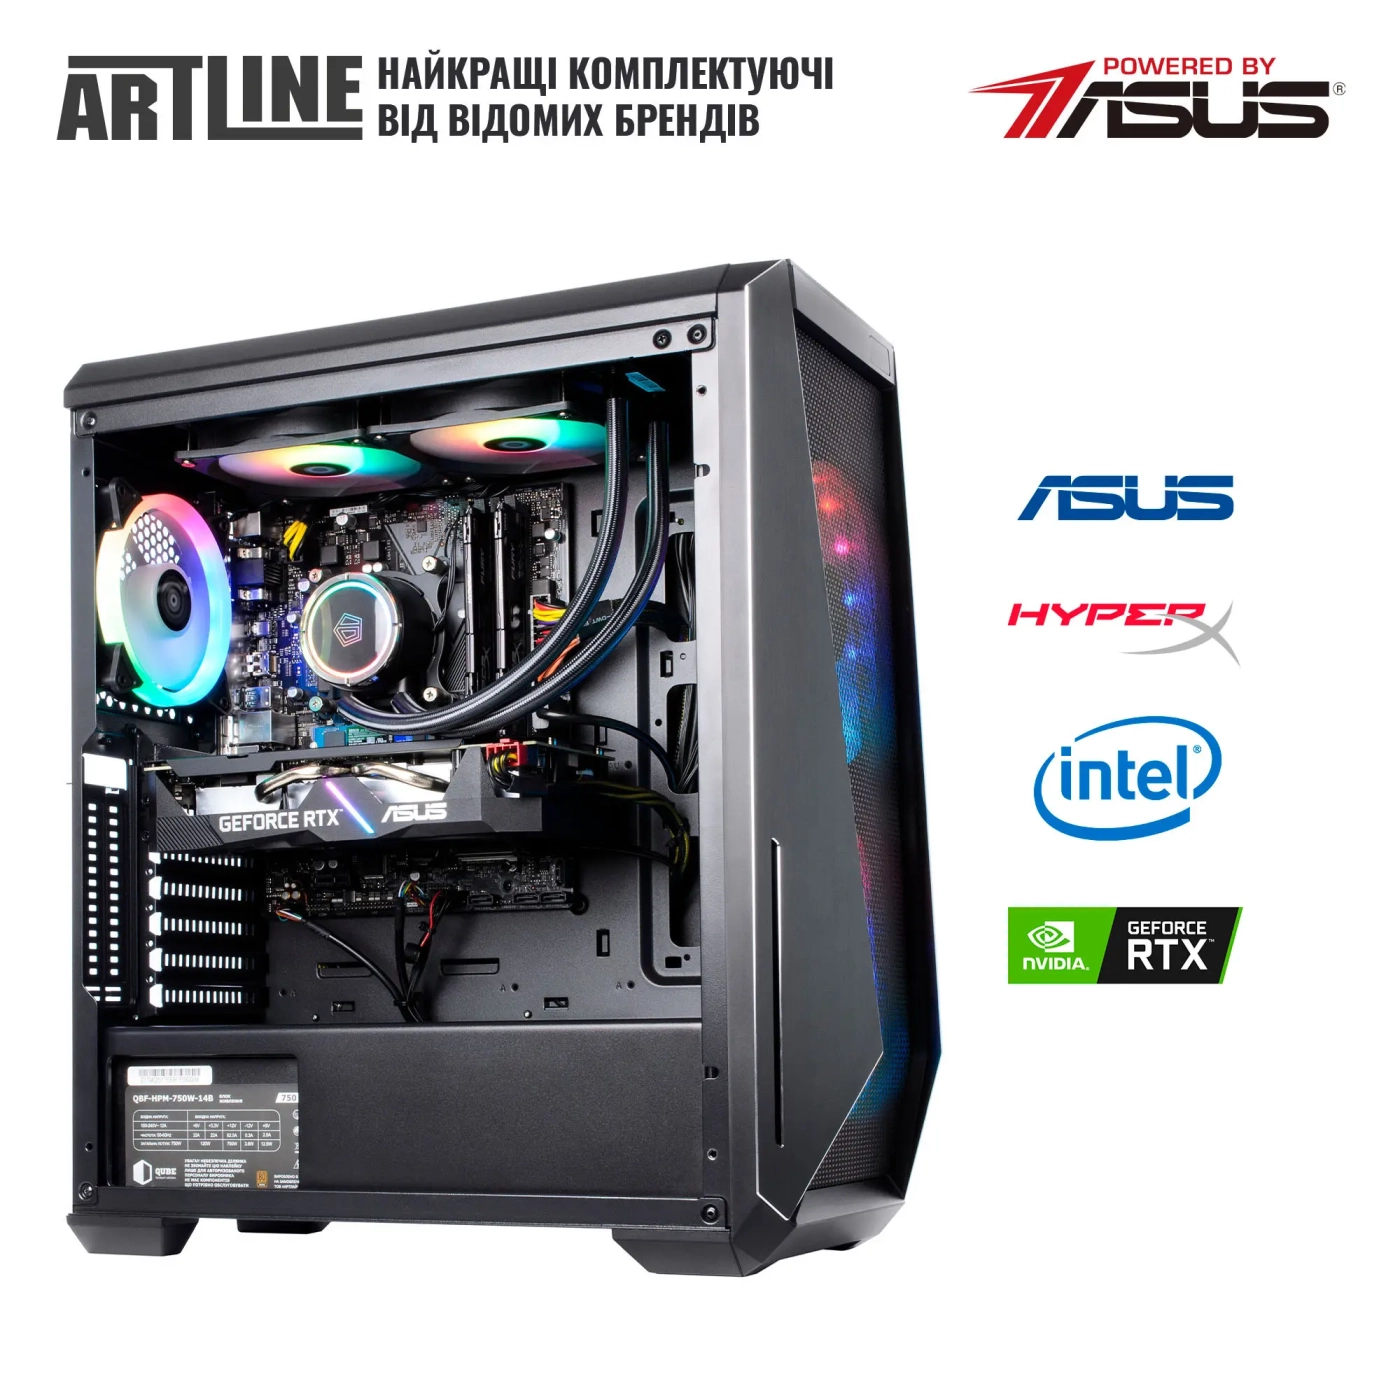 Купить Компьютер ARTLINE Gaming X77v90 - фото 9